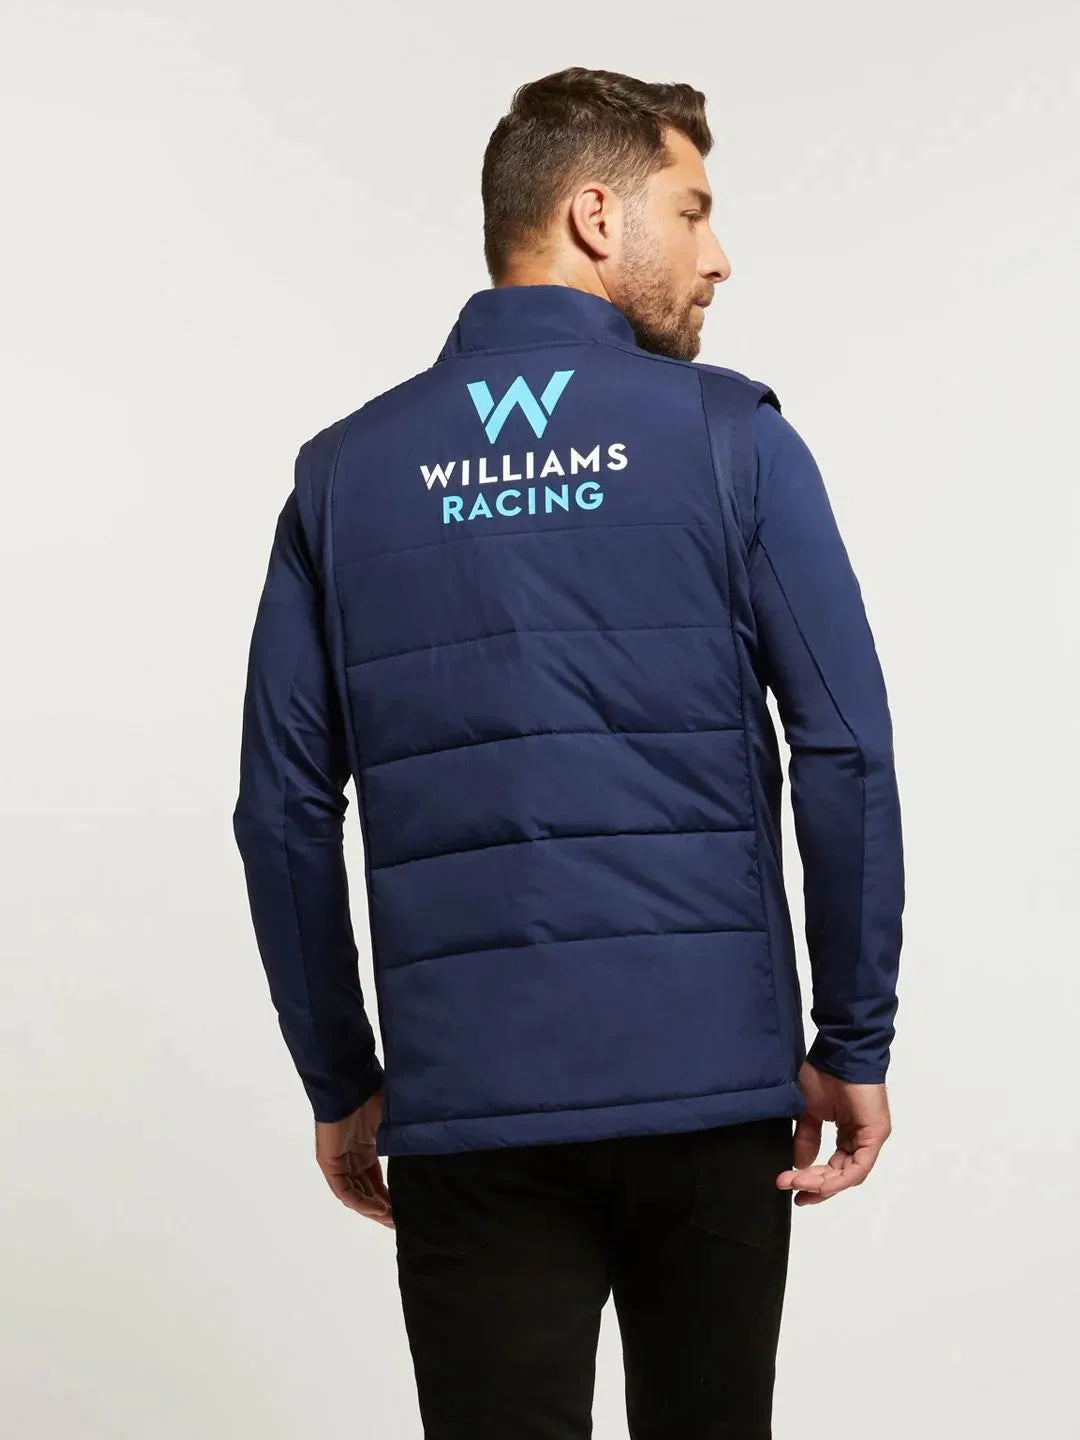 Williams Racing F1 2023 Men's Team Vest -Blue